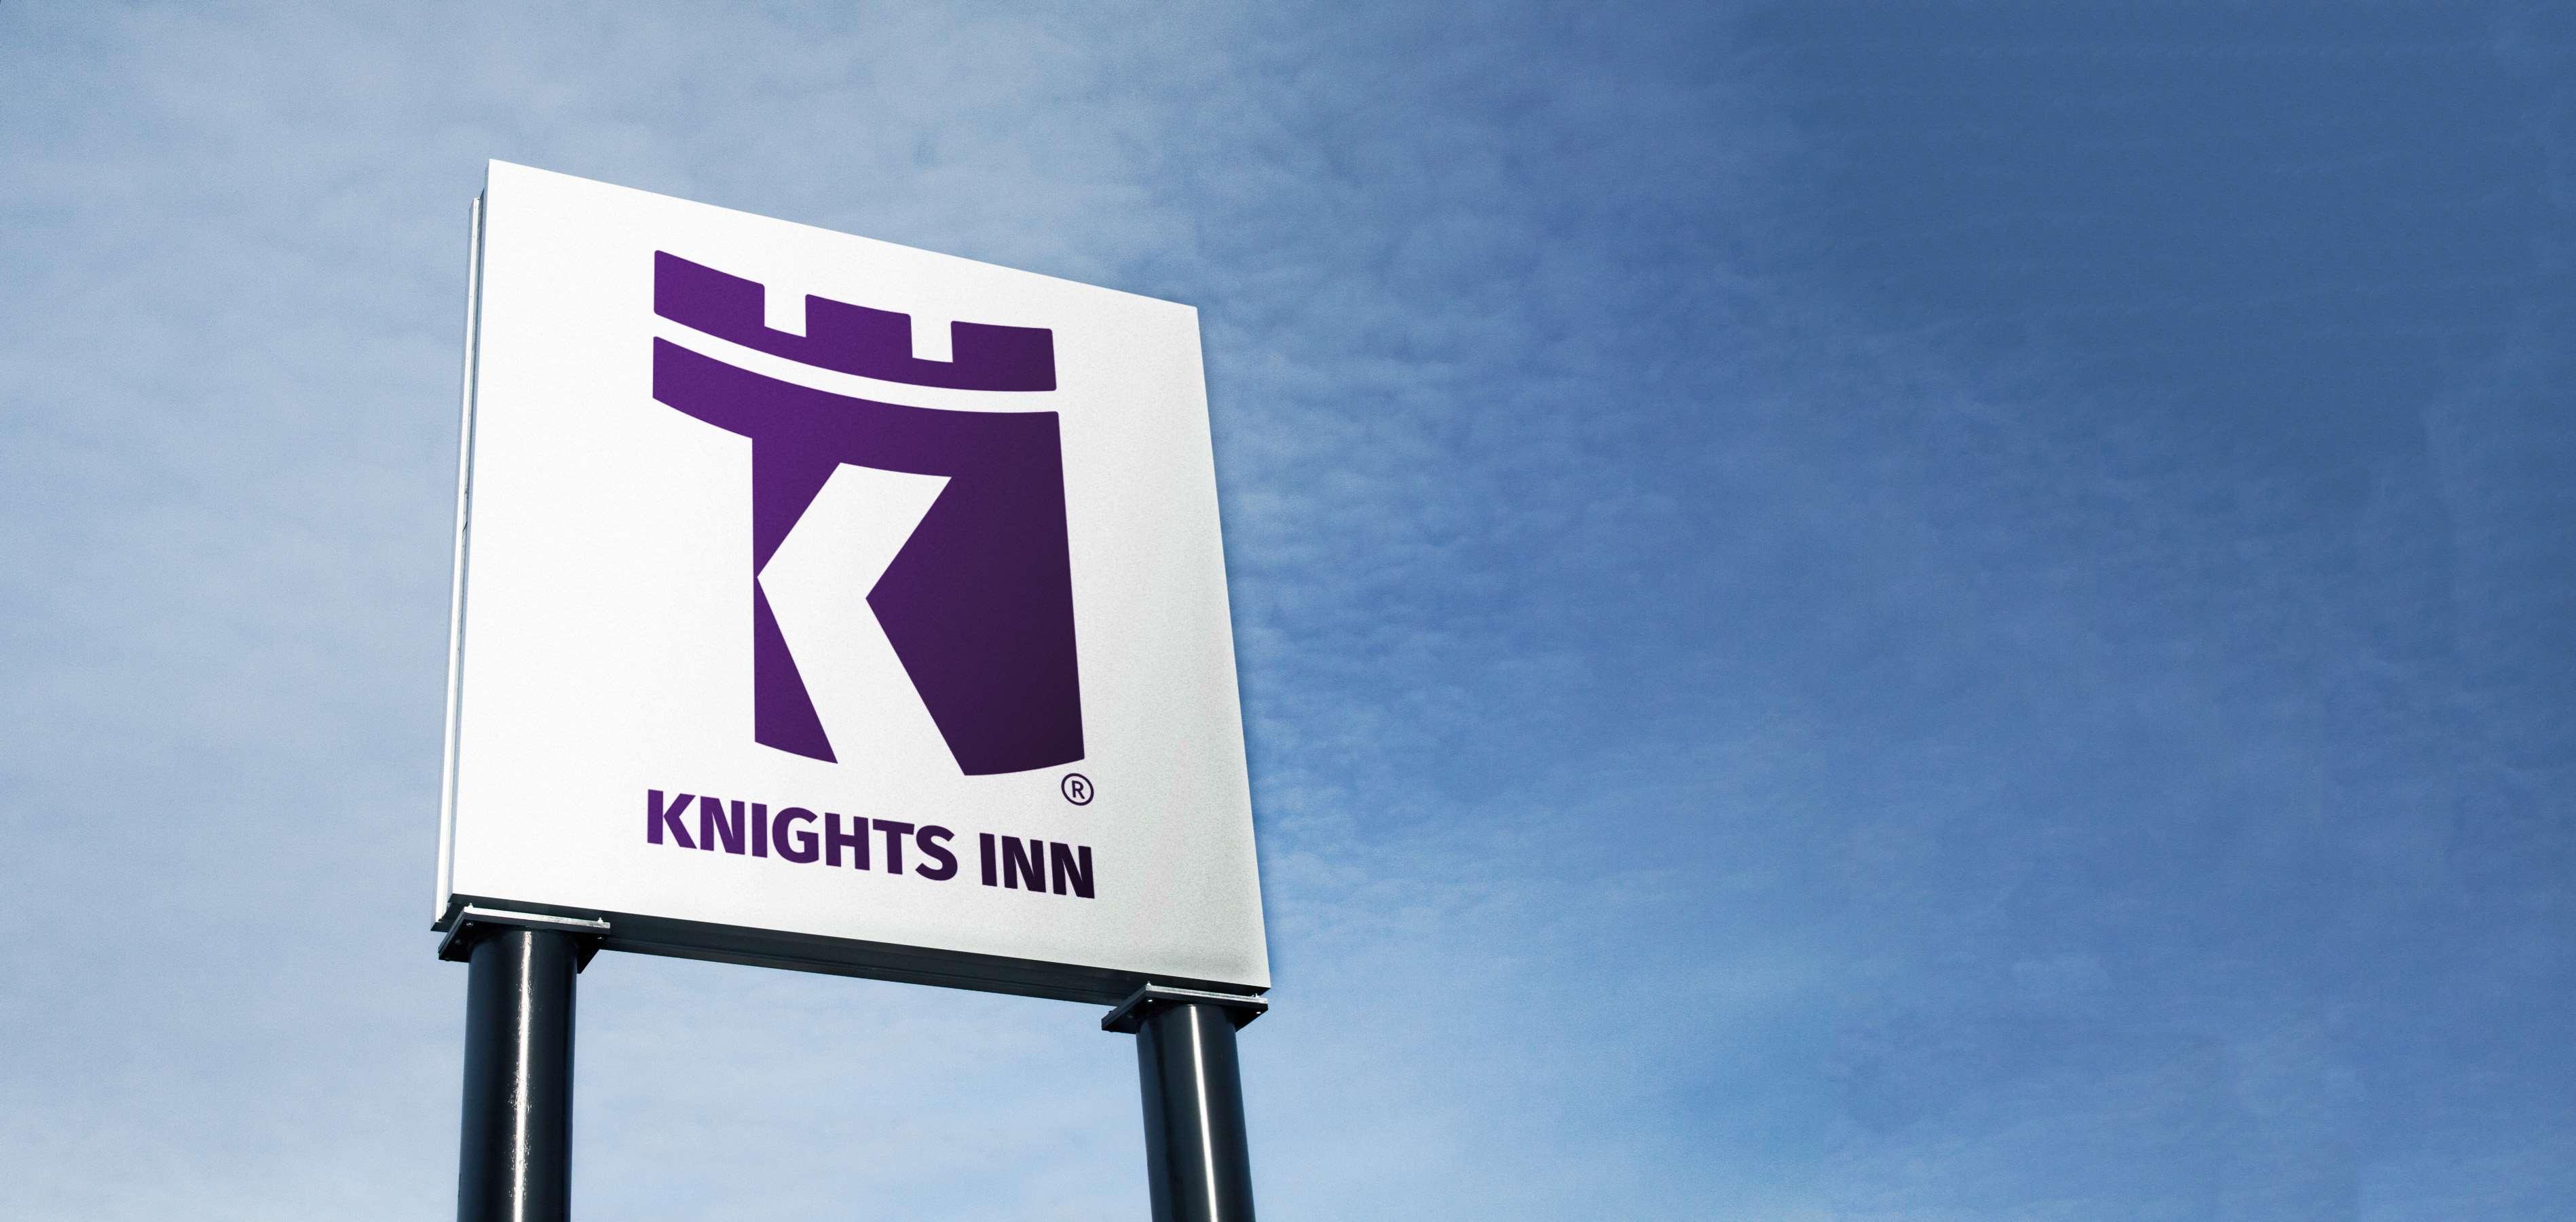 Knights Inn Macedonia